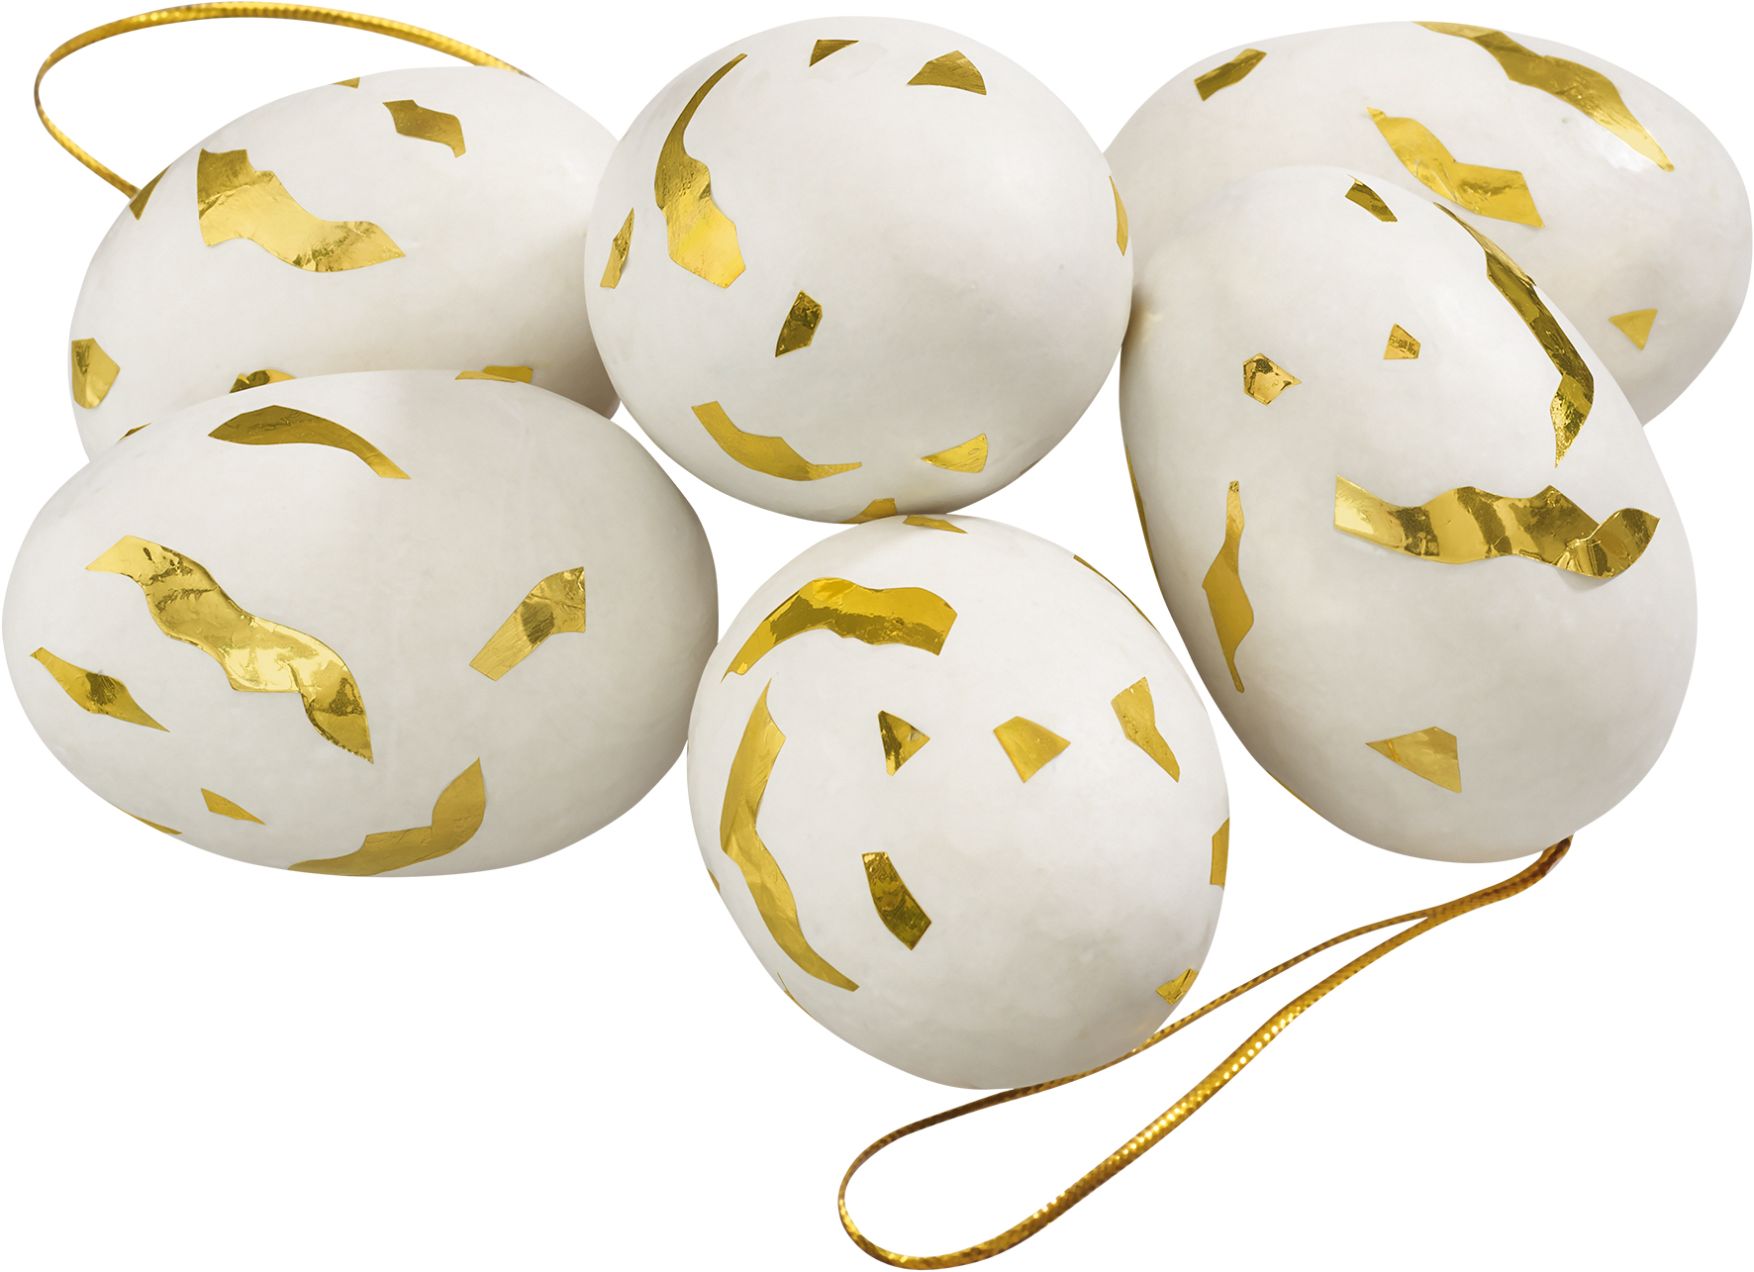 Hanging goldie vita och guldfärgade påskägg i ett sexpack från Cult design att dekorera påskriset med, mått 6 cm.